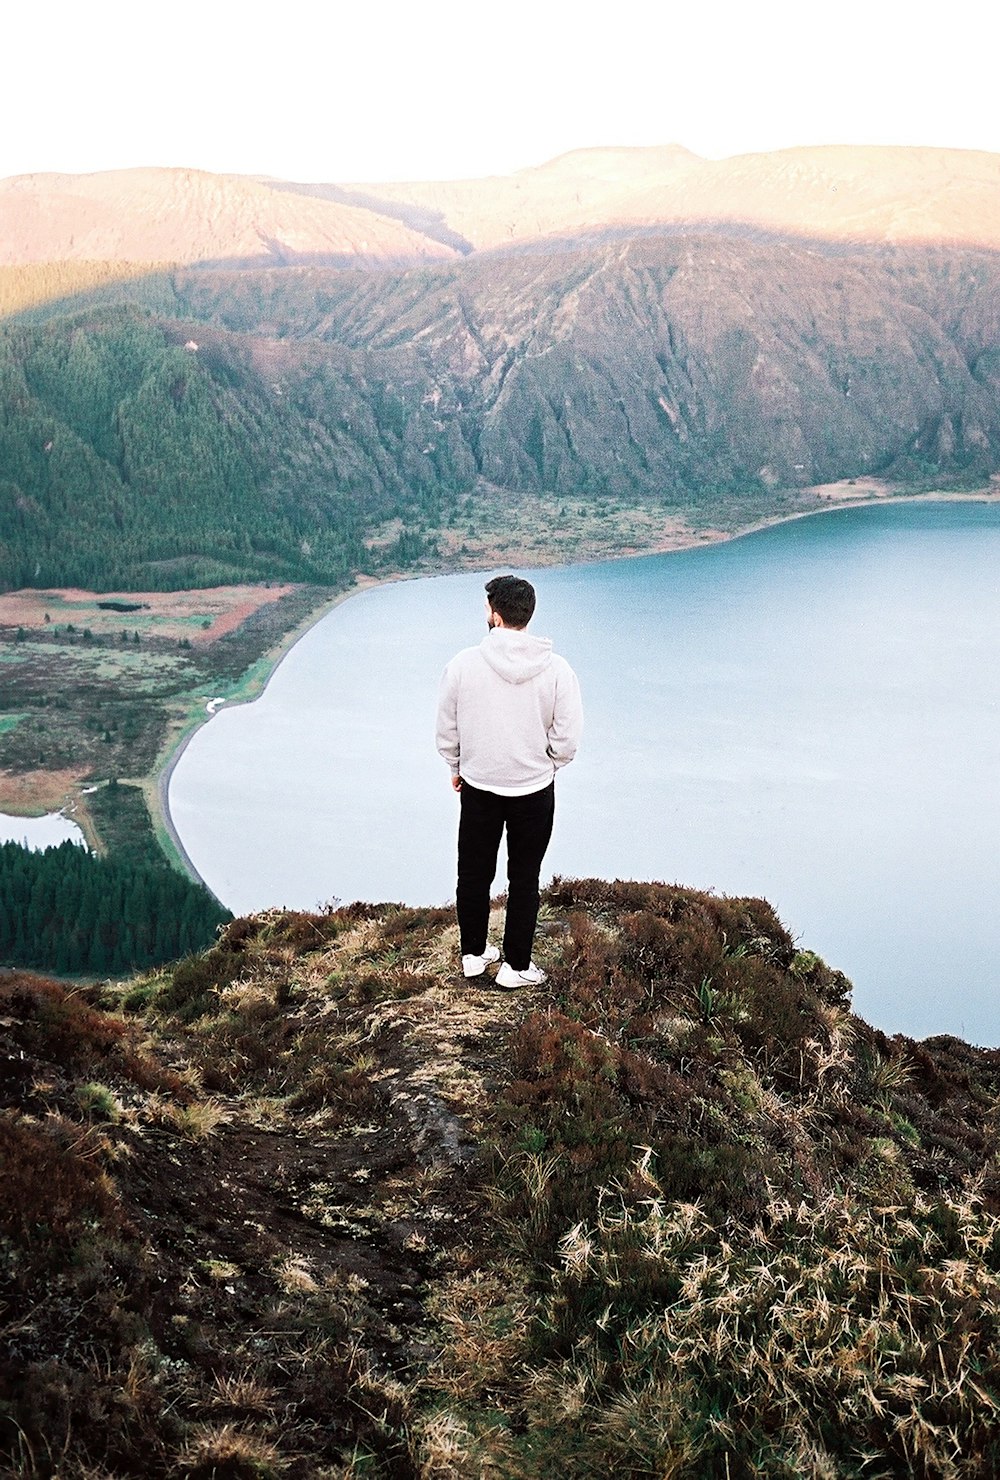 湖を見下ろす丘の上に立つ男